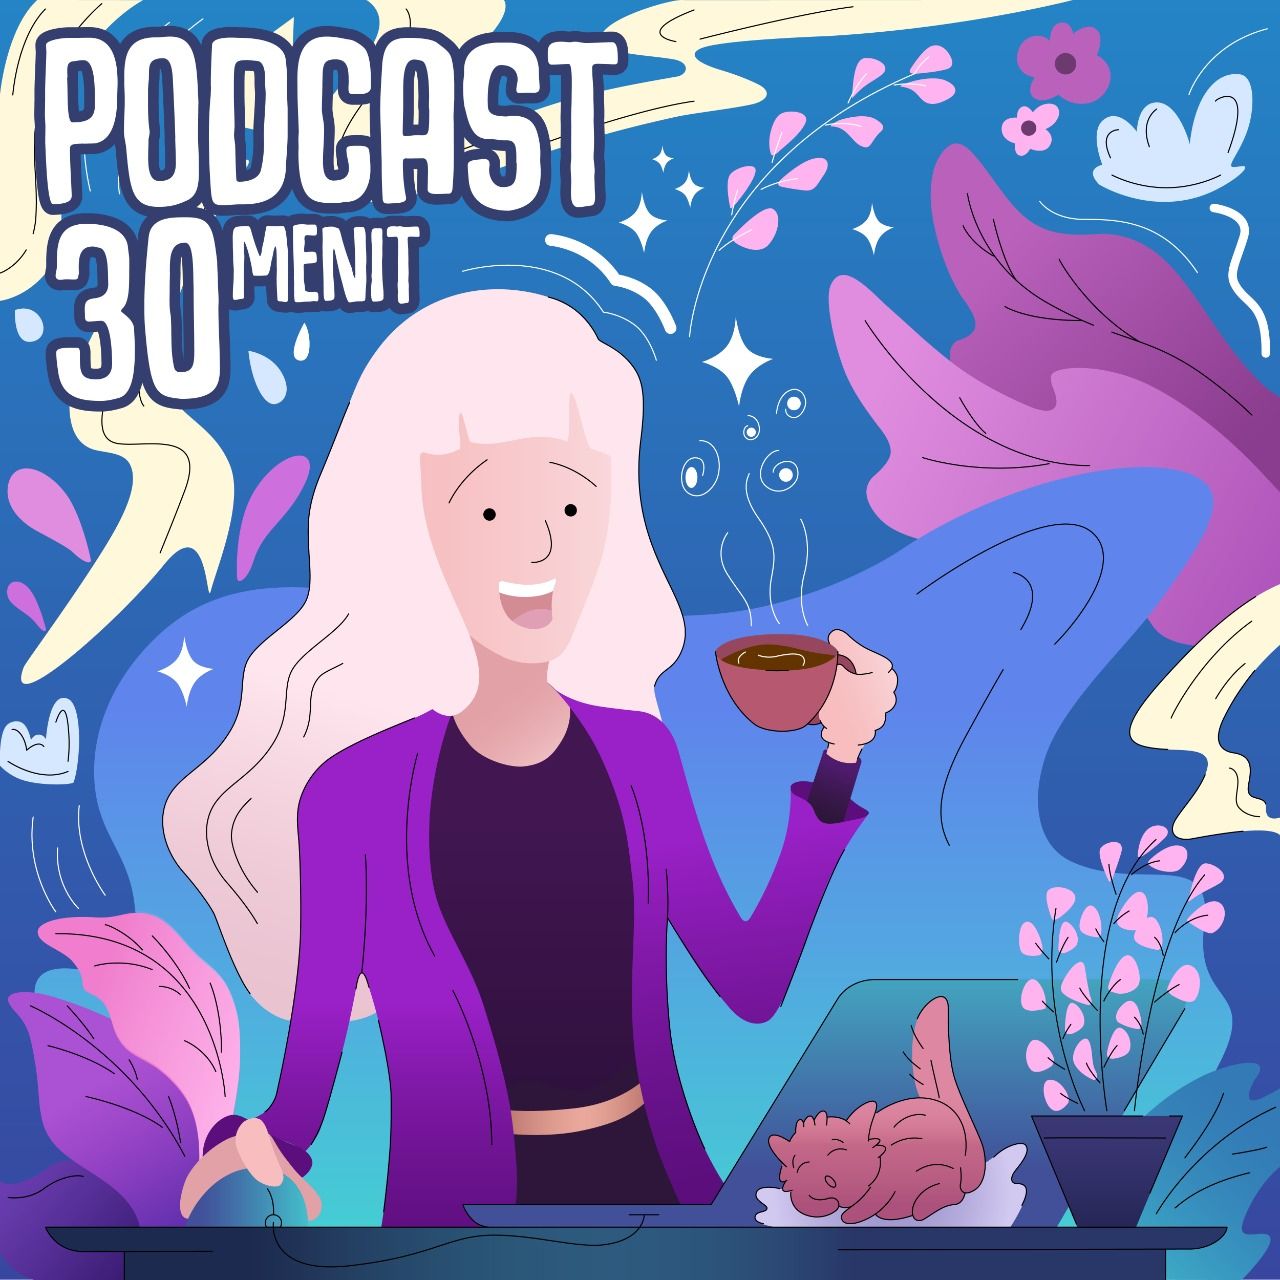 Podcast 30 Menit